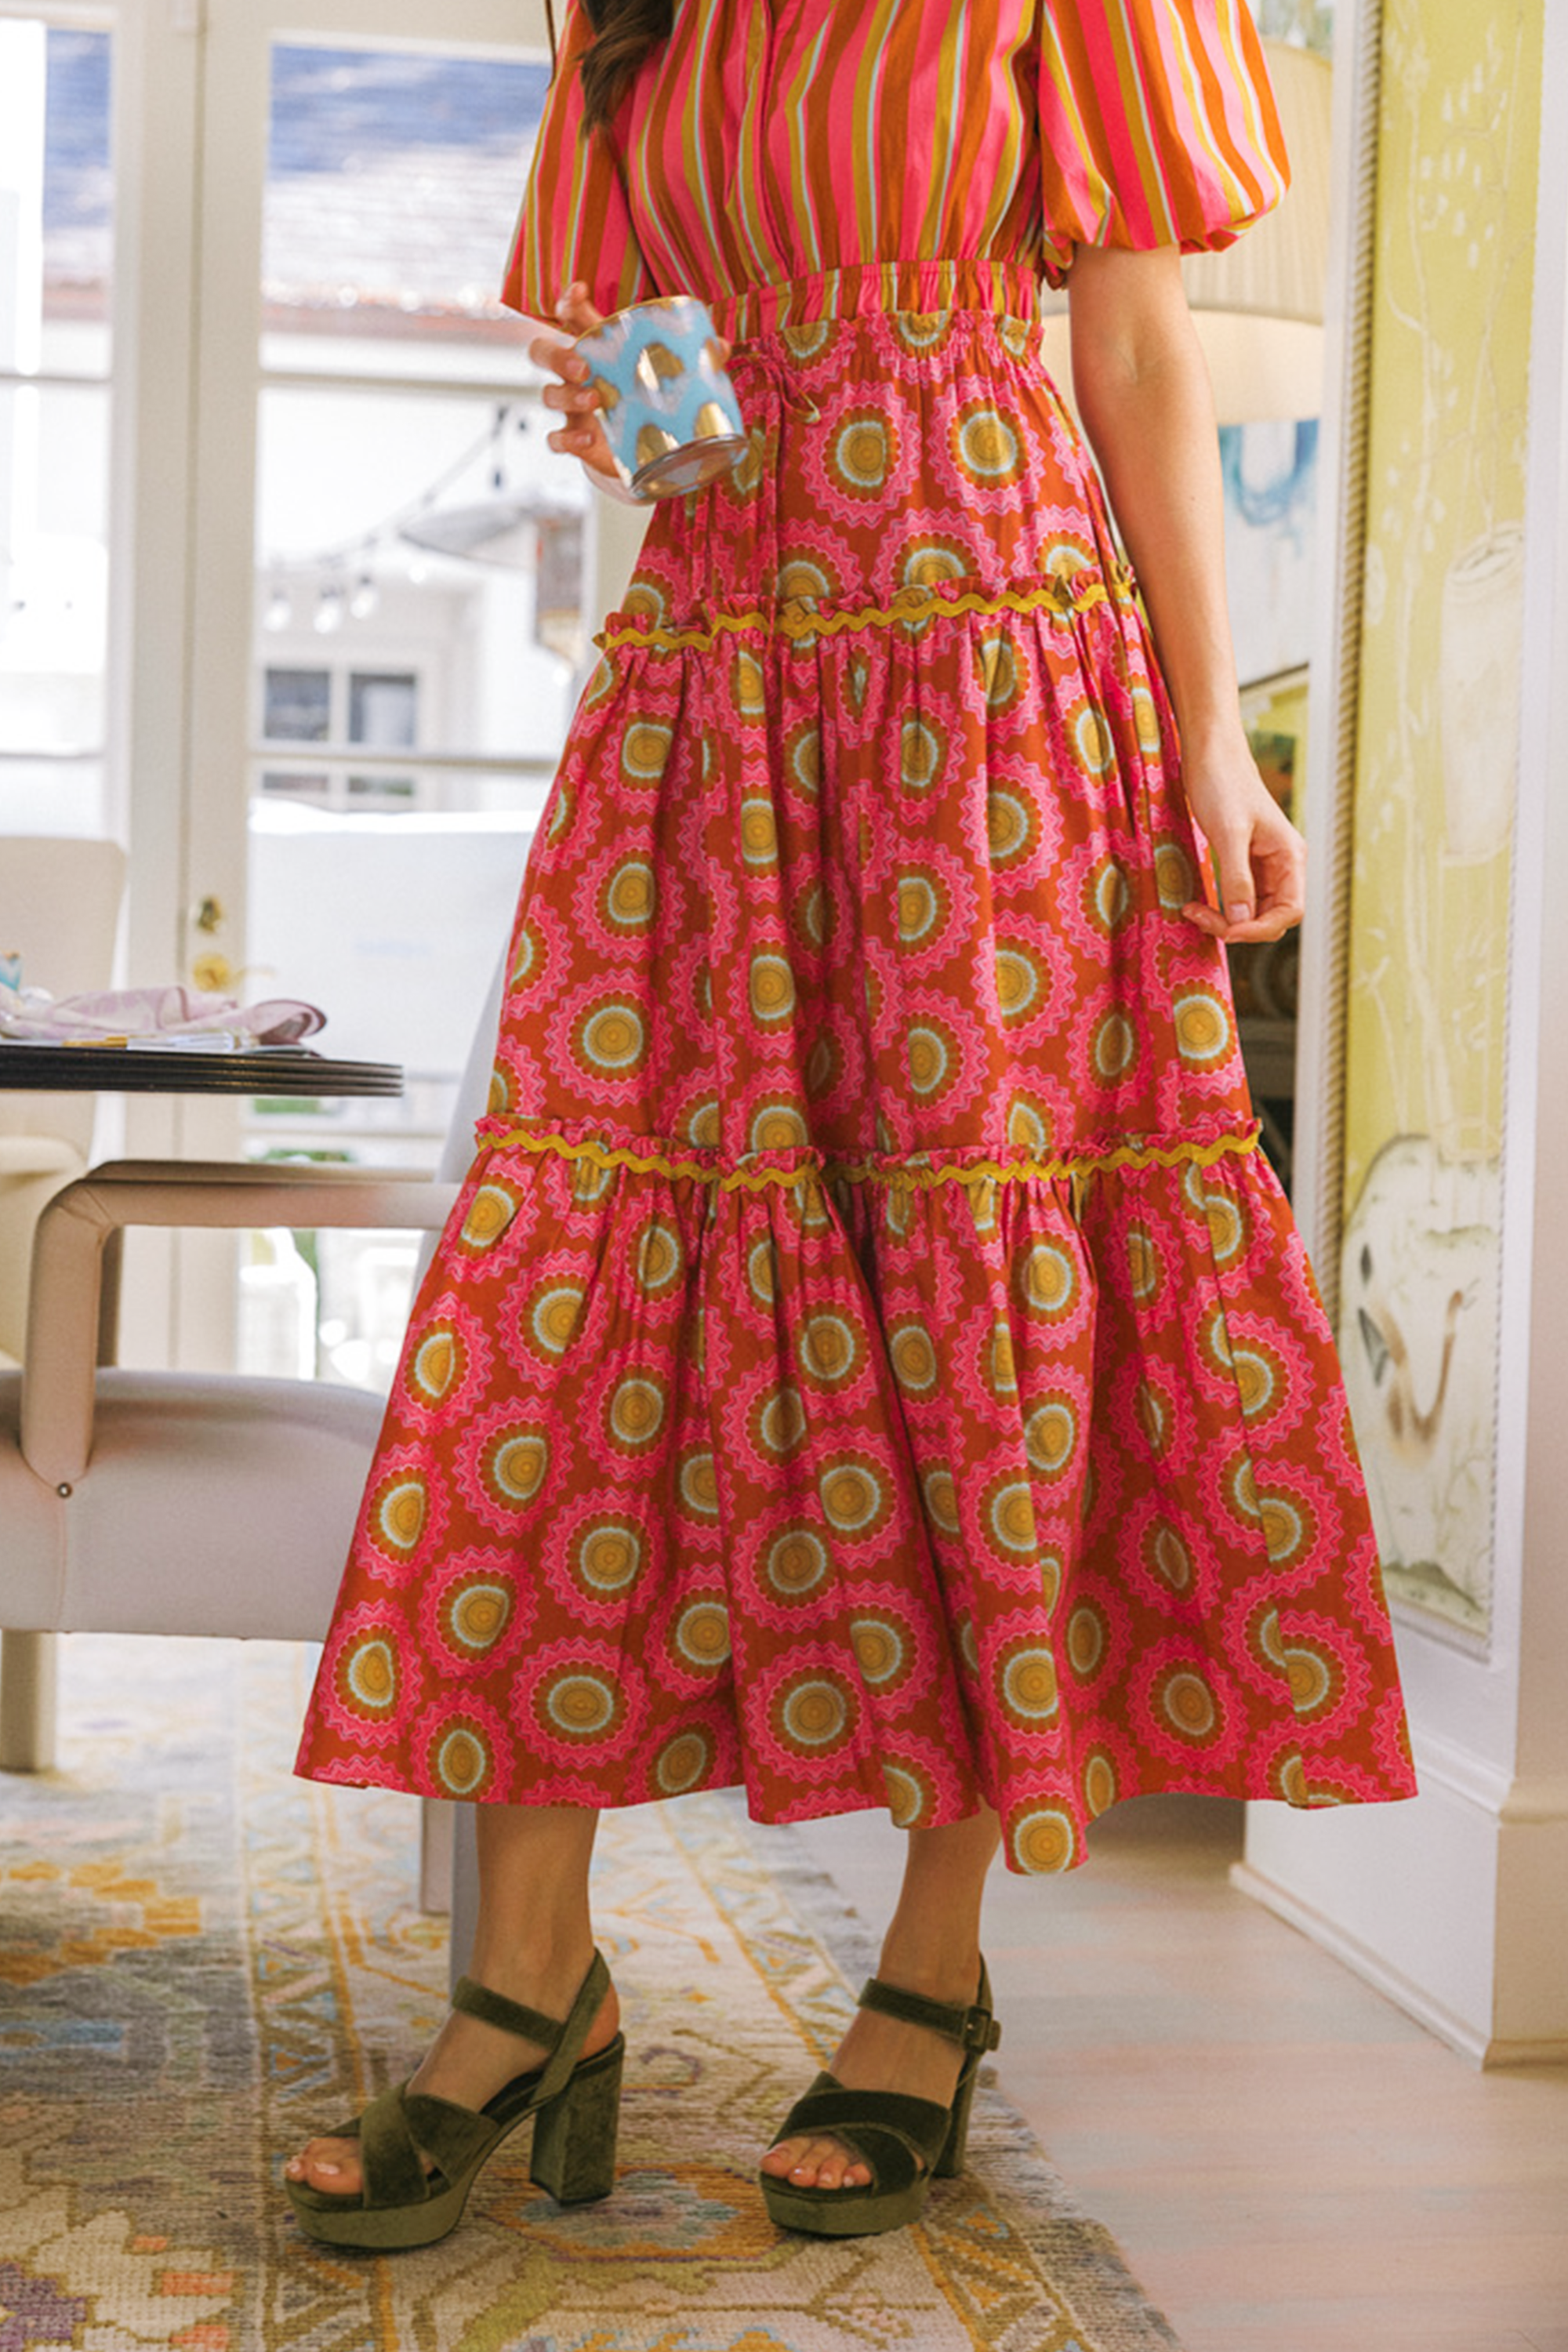 Banyan Street Puff Sleeve Dress - Sunflower Pink & Stripe